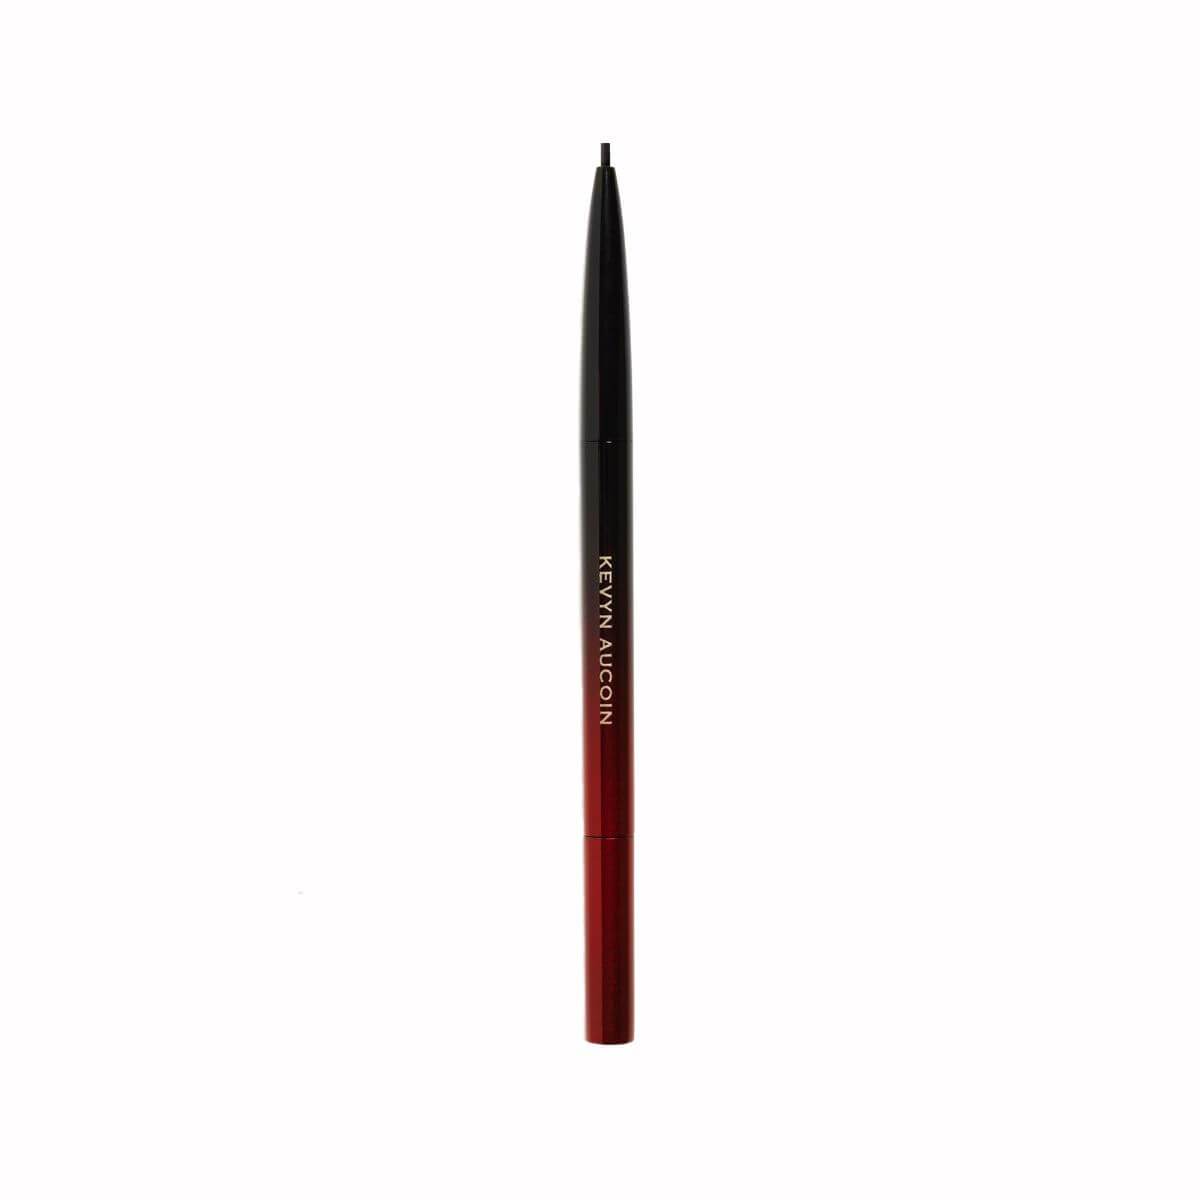 The Precision Brow Pencil - Dark Brunette